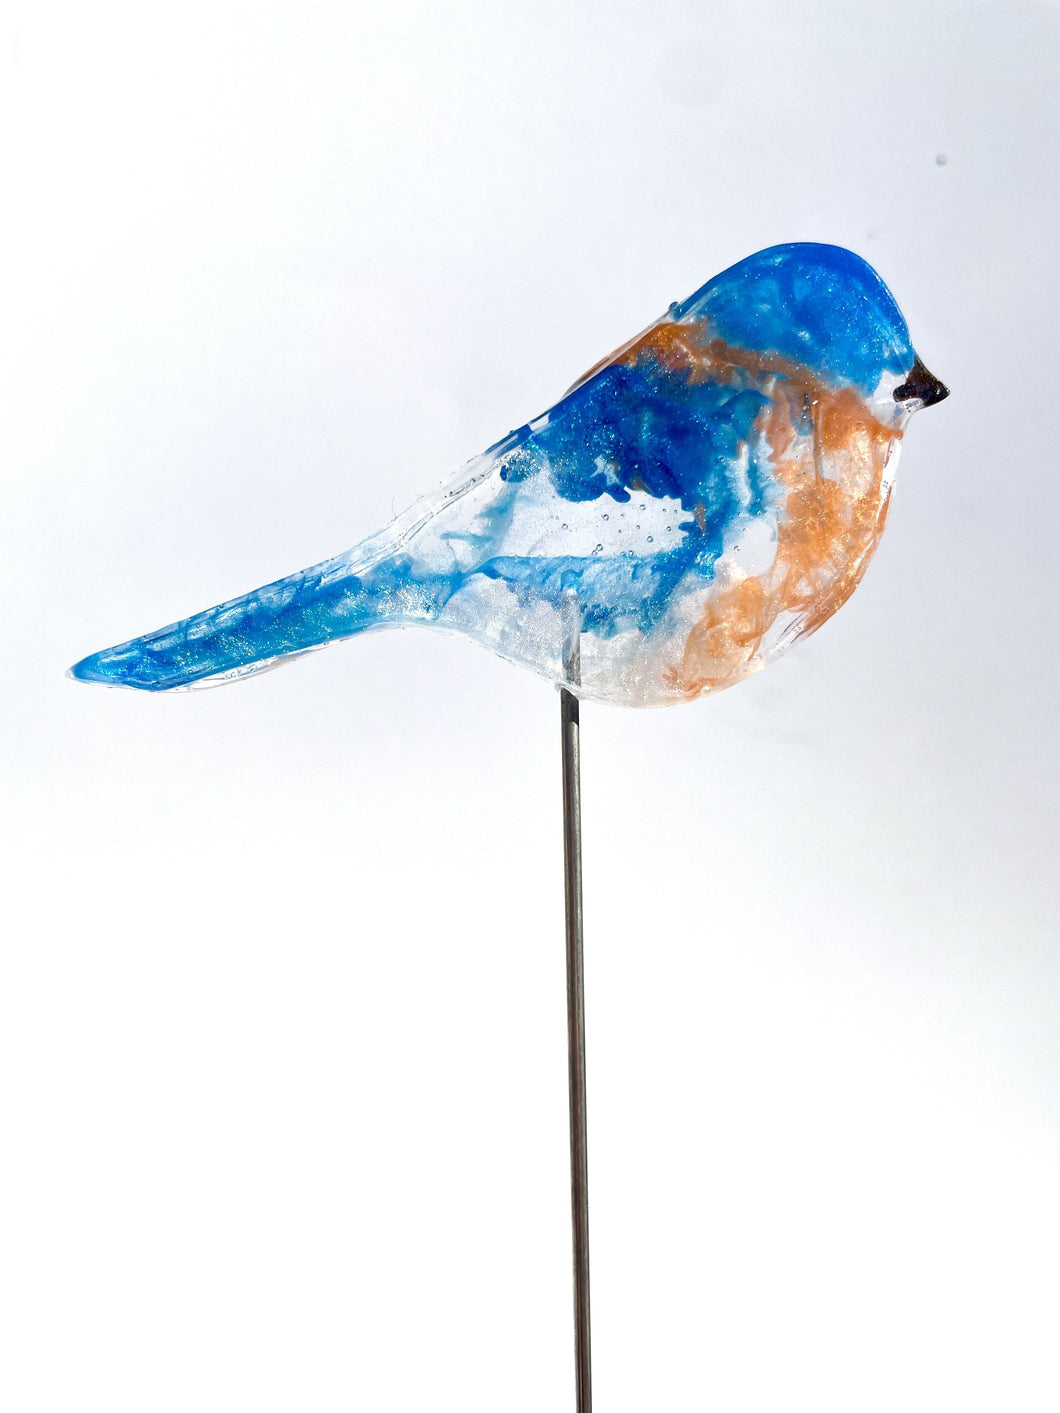 Small Bluebird - Bird on a Stick Birds on a Stick Garden Girl NC 